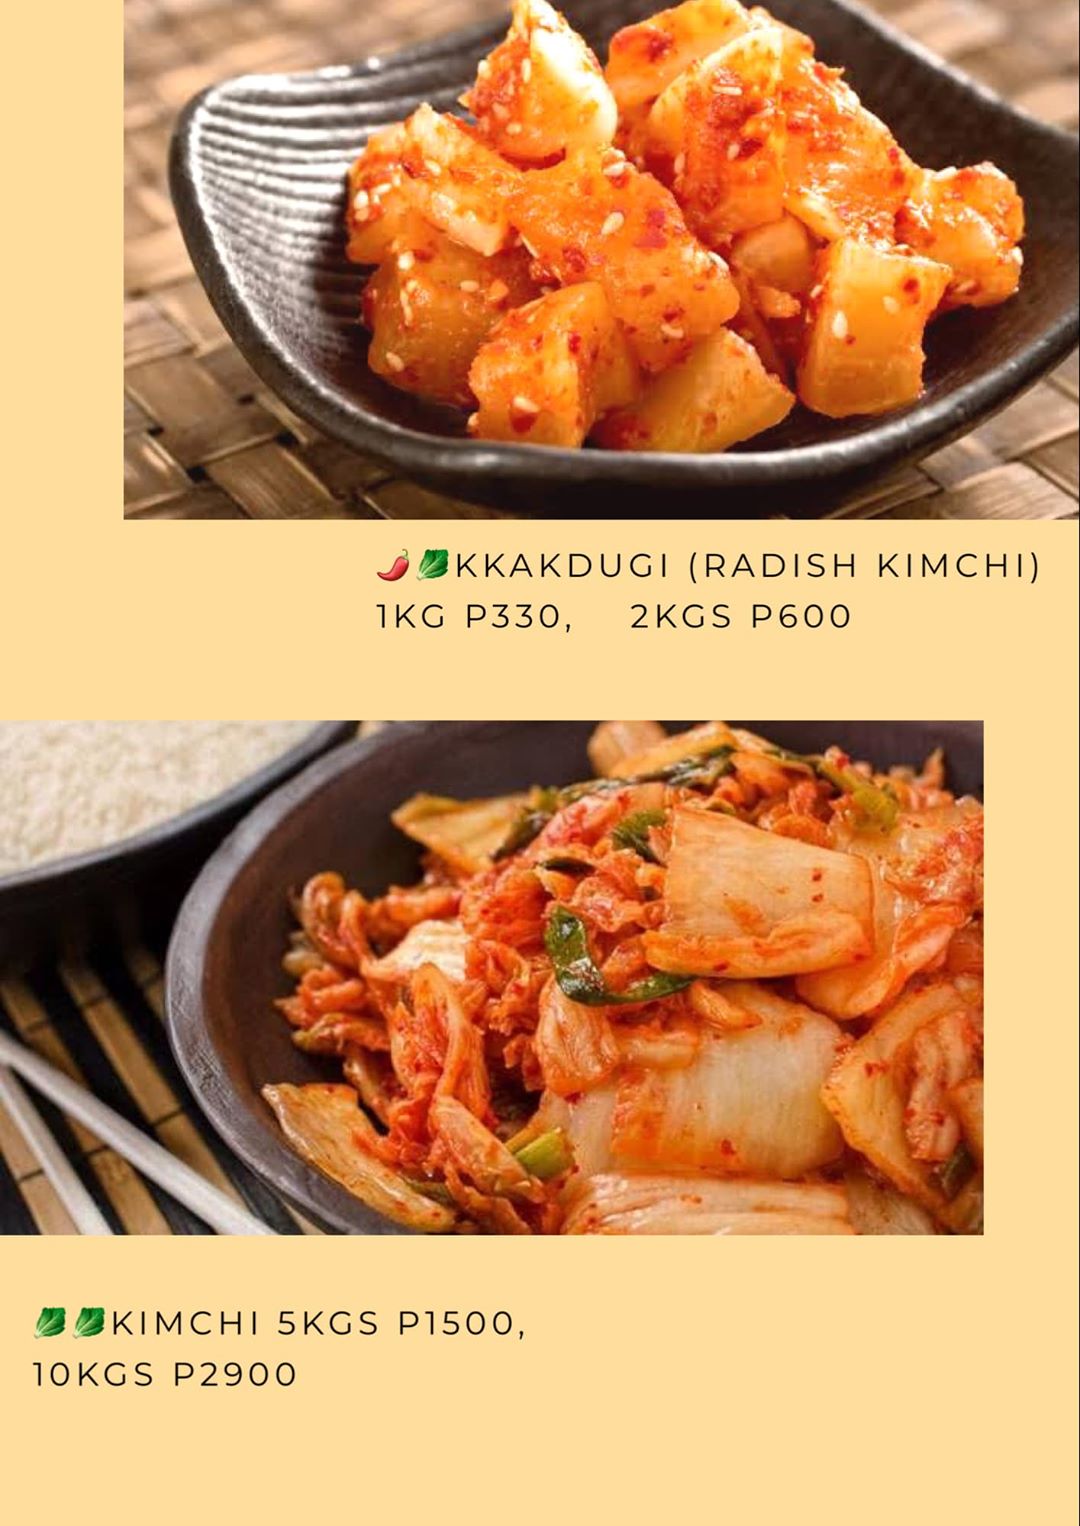 kkakdugi or radish kimchi from Soga Miga